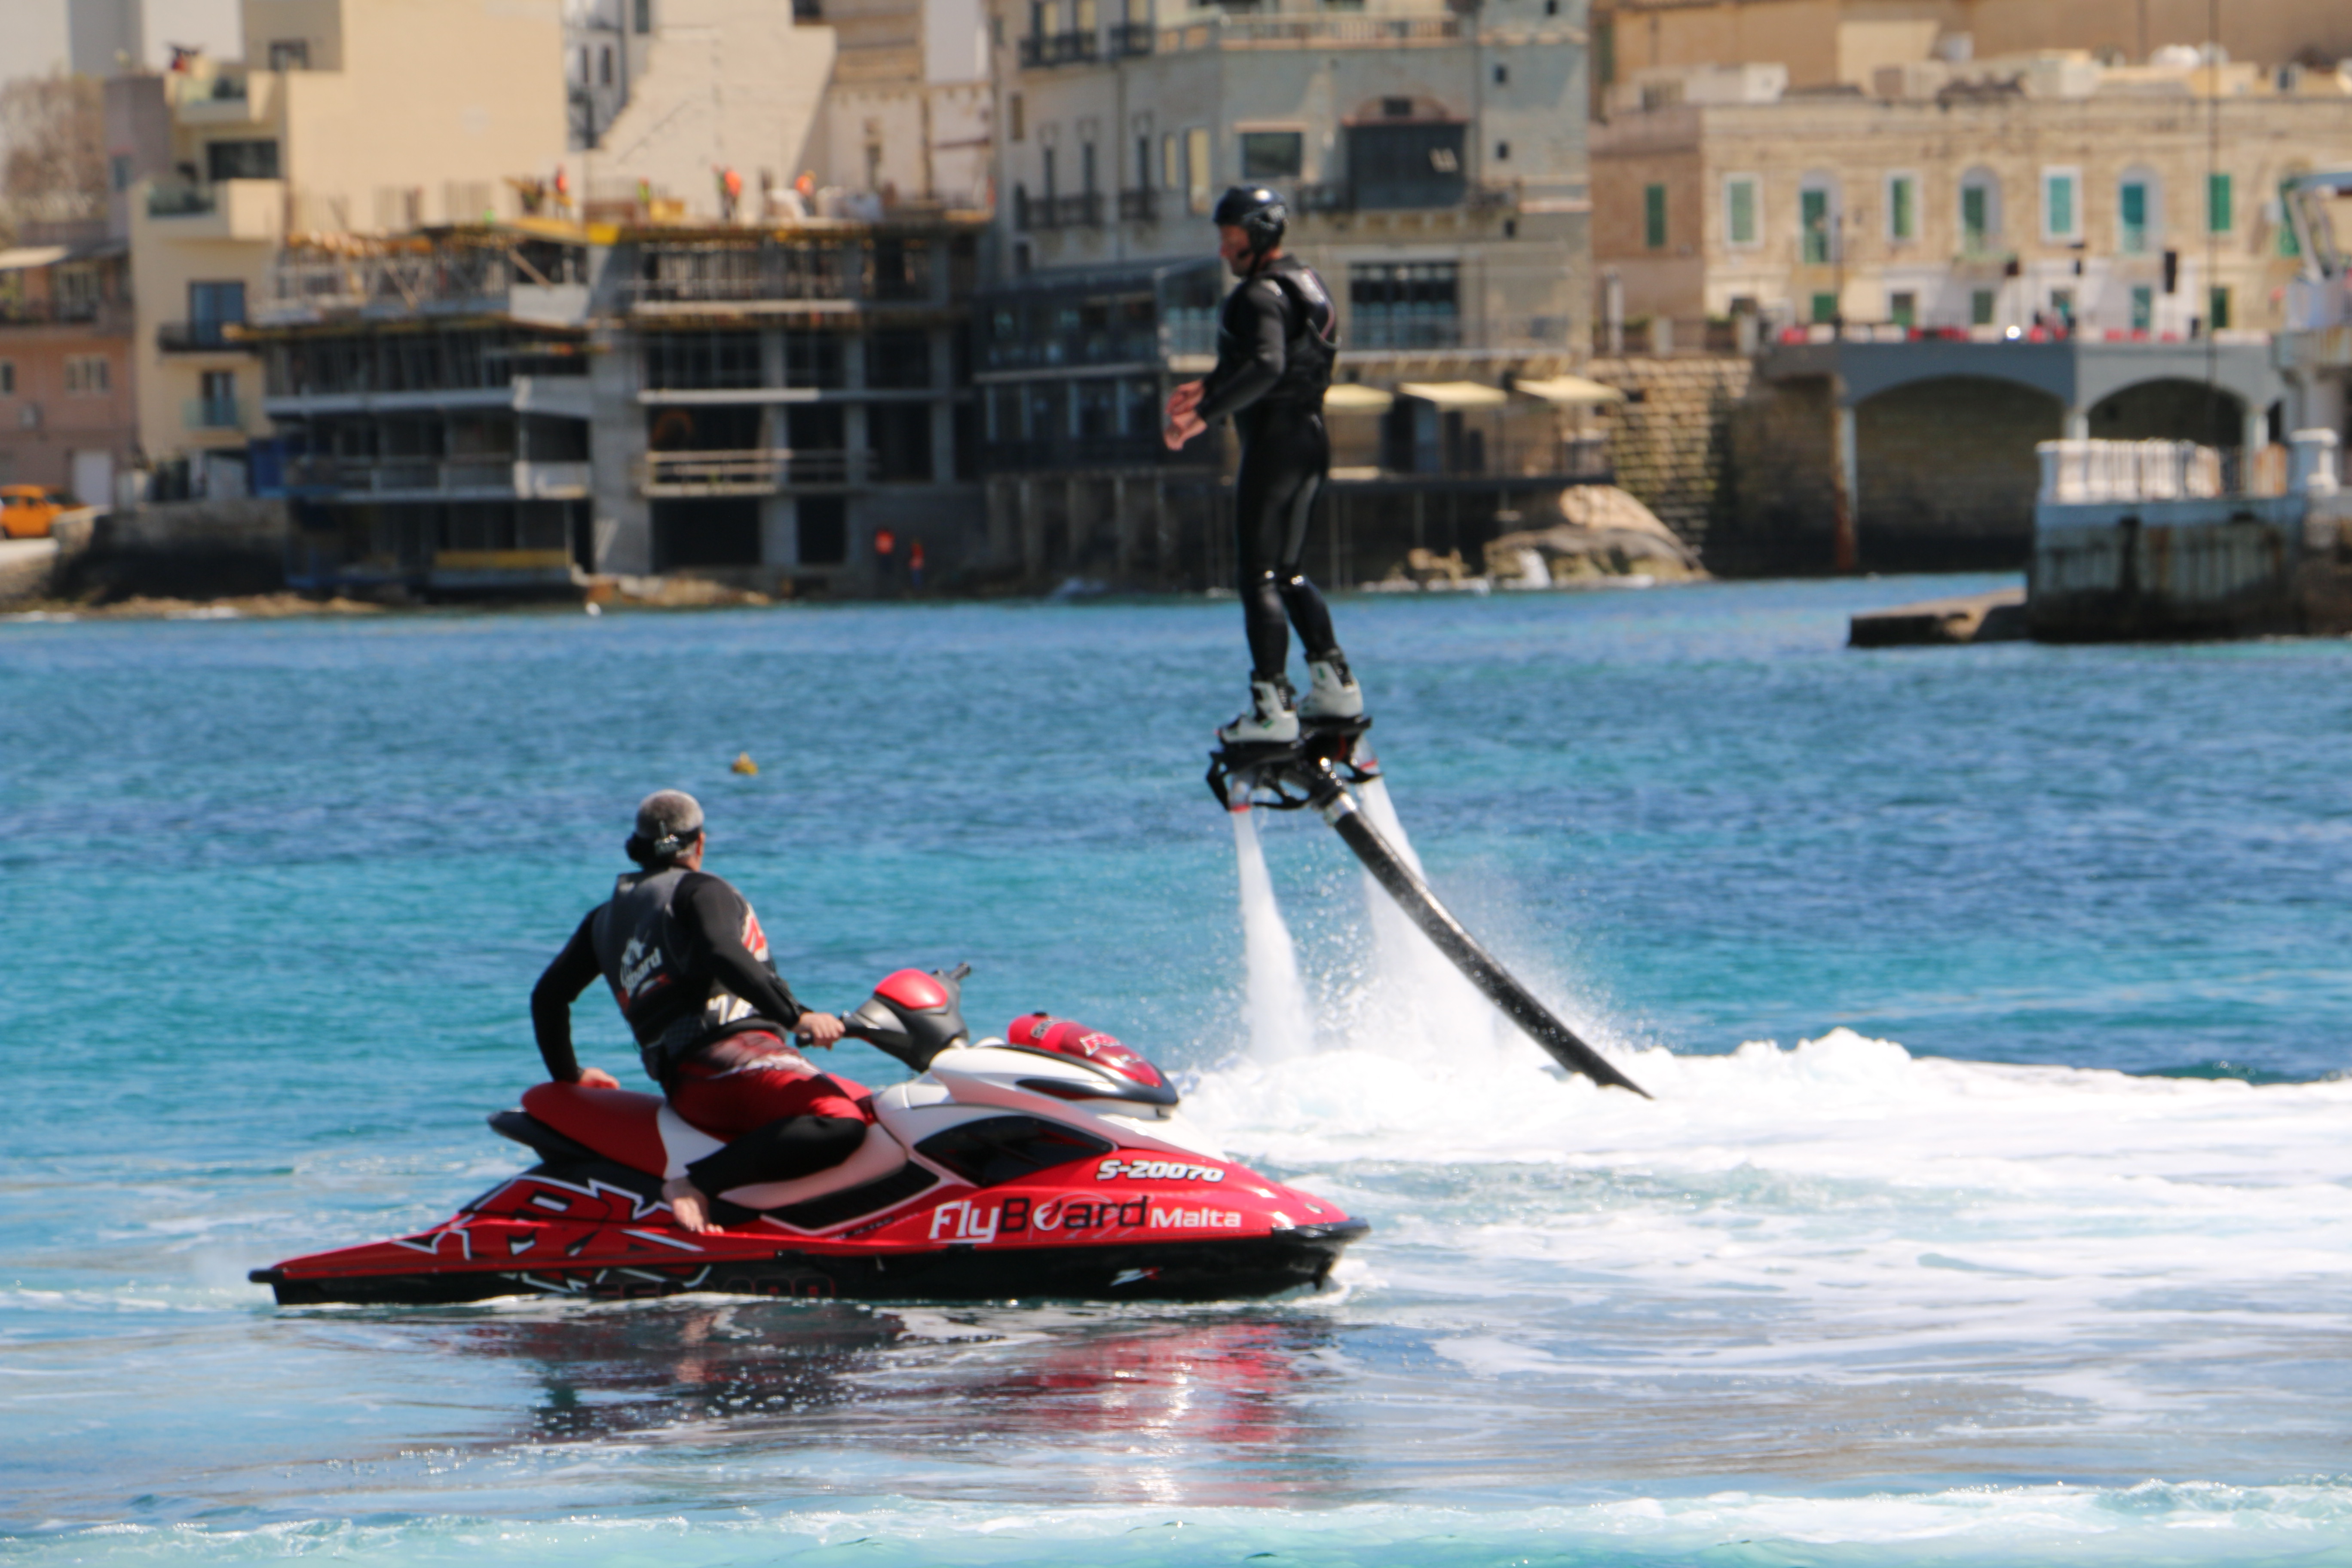 \Flyboard Malta - Malta Discount Card - Beaches Guide - Malta & Gozo ...